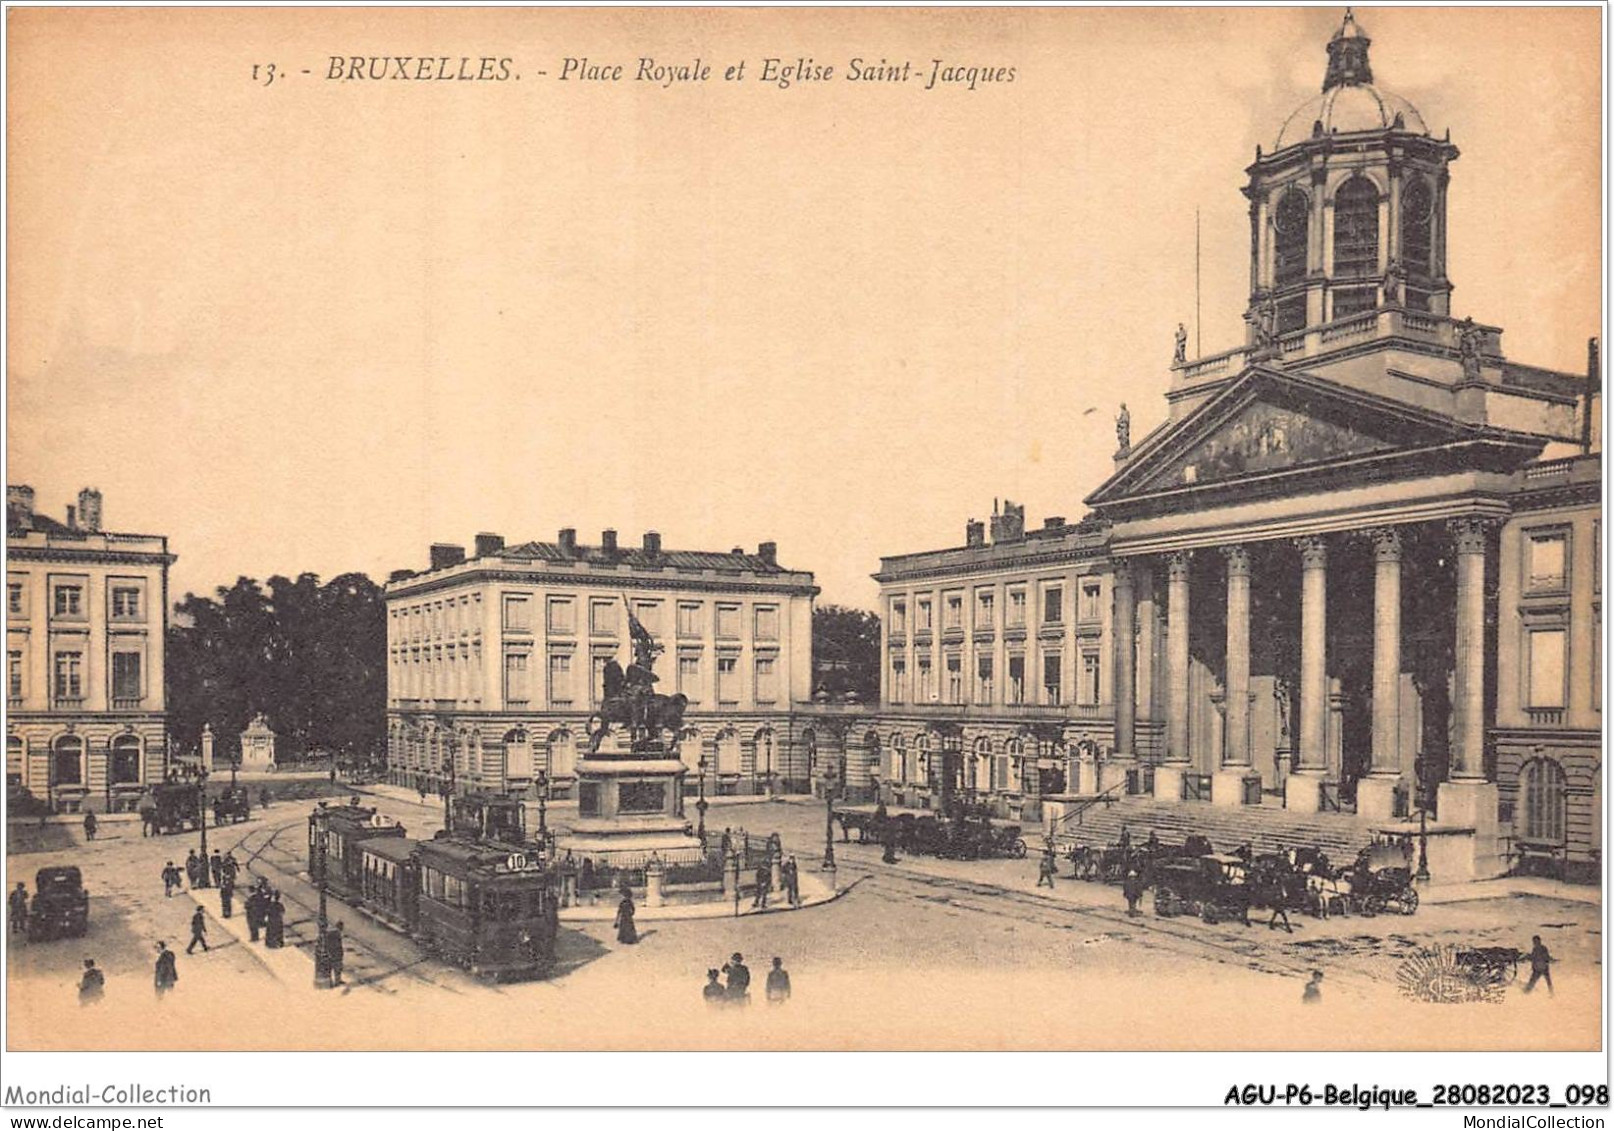 AGUP6-0495-BELGIQUE - BRUXELLES - Place Royale Et église Saint-jacques - Marktpleinen, Pleinen